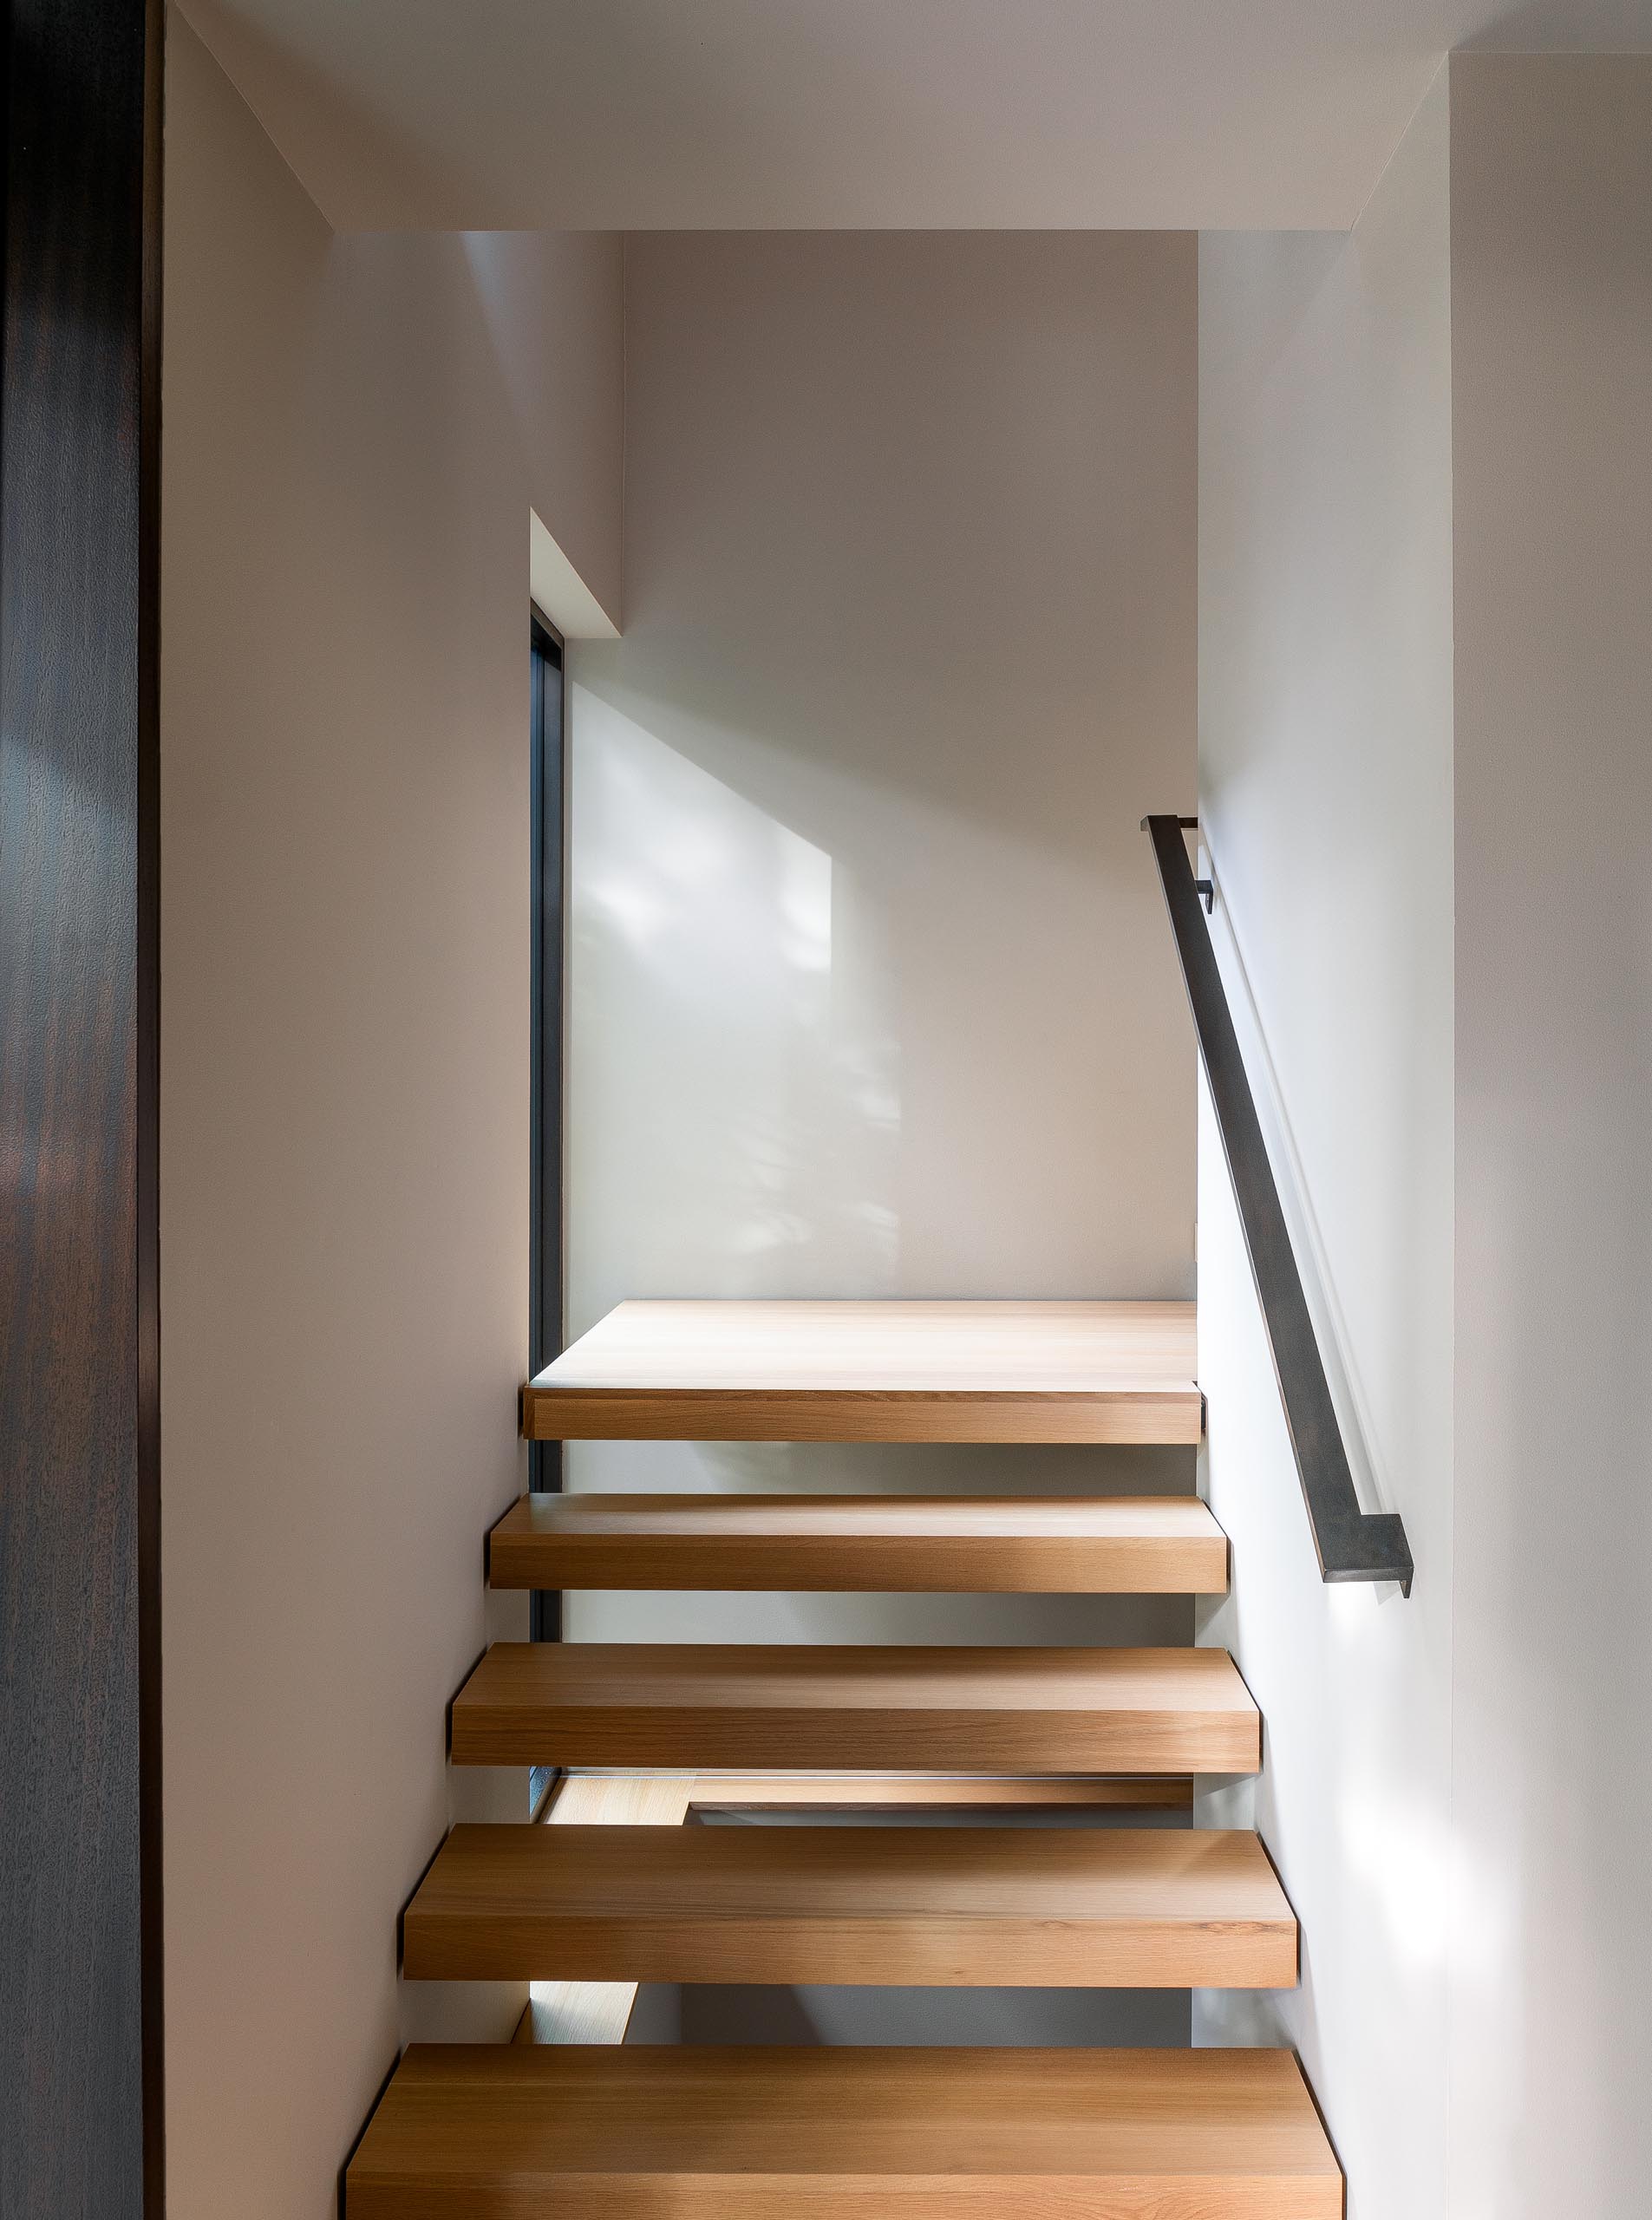 Деревянная лестница соединяет верхние социальные зоны этого современного дома со спальнями и ванными комнатами, расположенными на нижнем уровне.